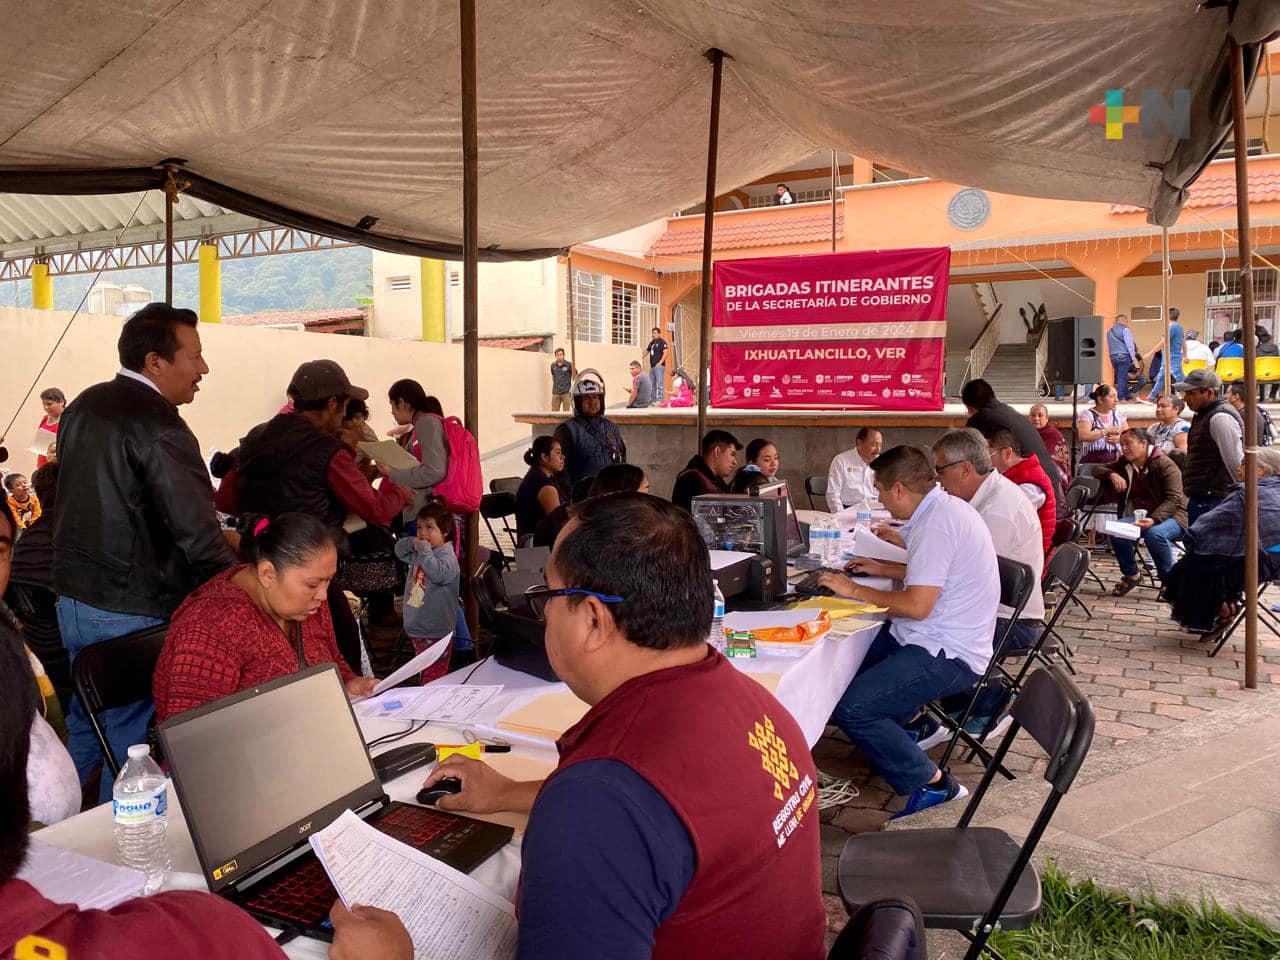 Brigadas Itinerantes del Registro Civil brindan más de 2 mil trámites en Ixhuatlancillo y Atzacan